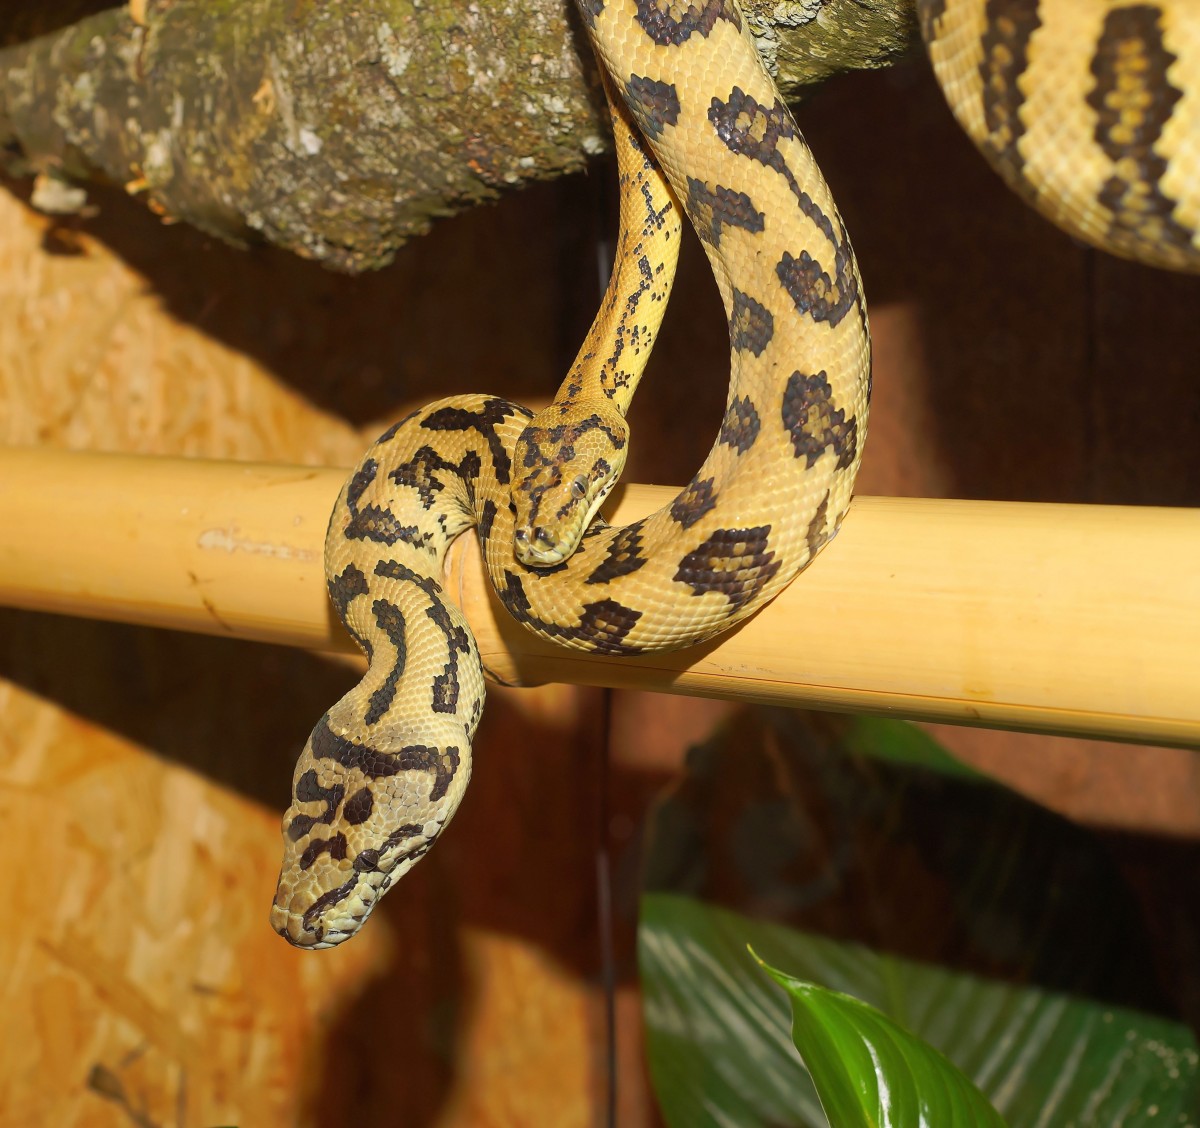 Tổng hợp hình ảnh về loài rắn đẹp nhất - [Kích thước hình ảnh: 1200x1128 px]